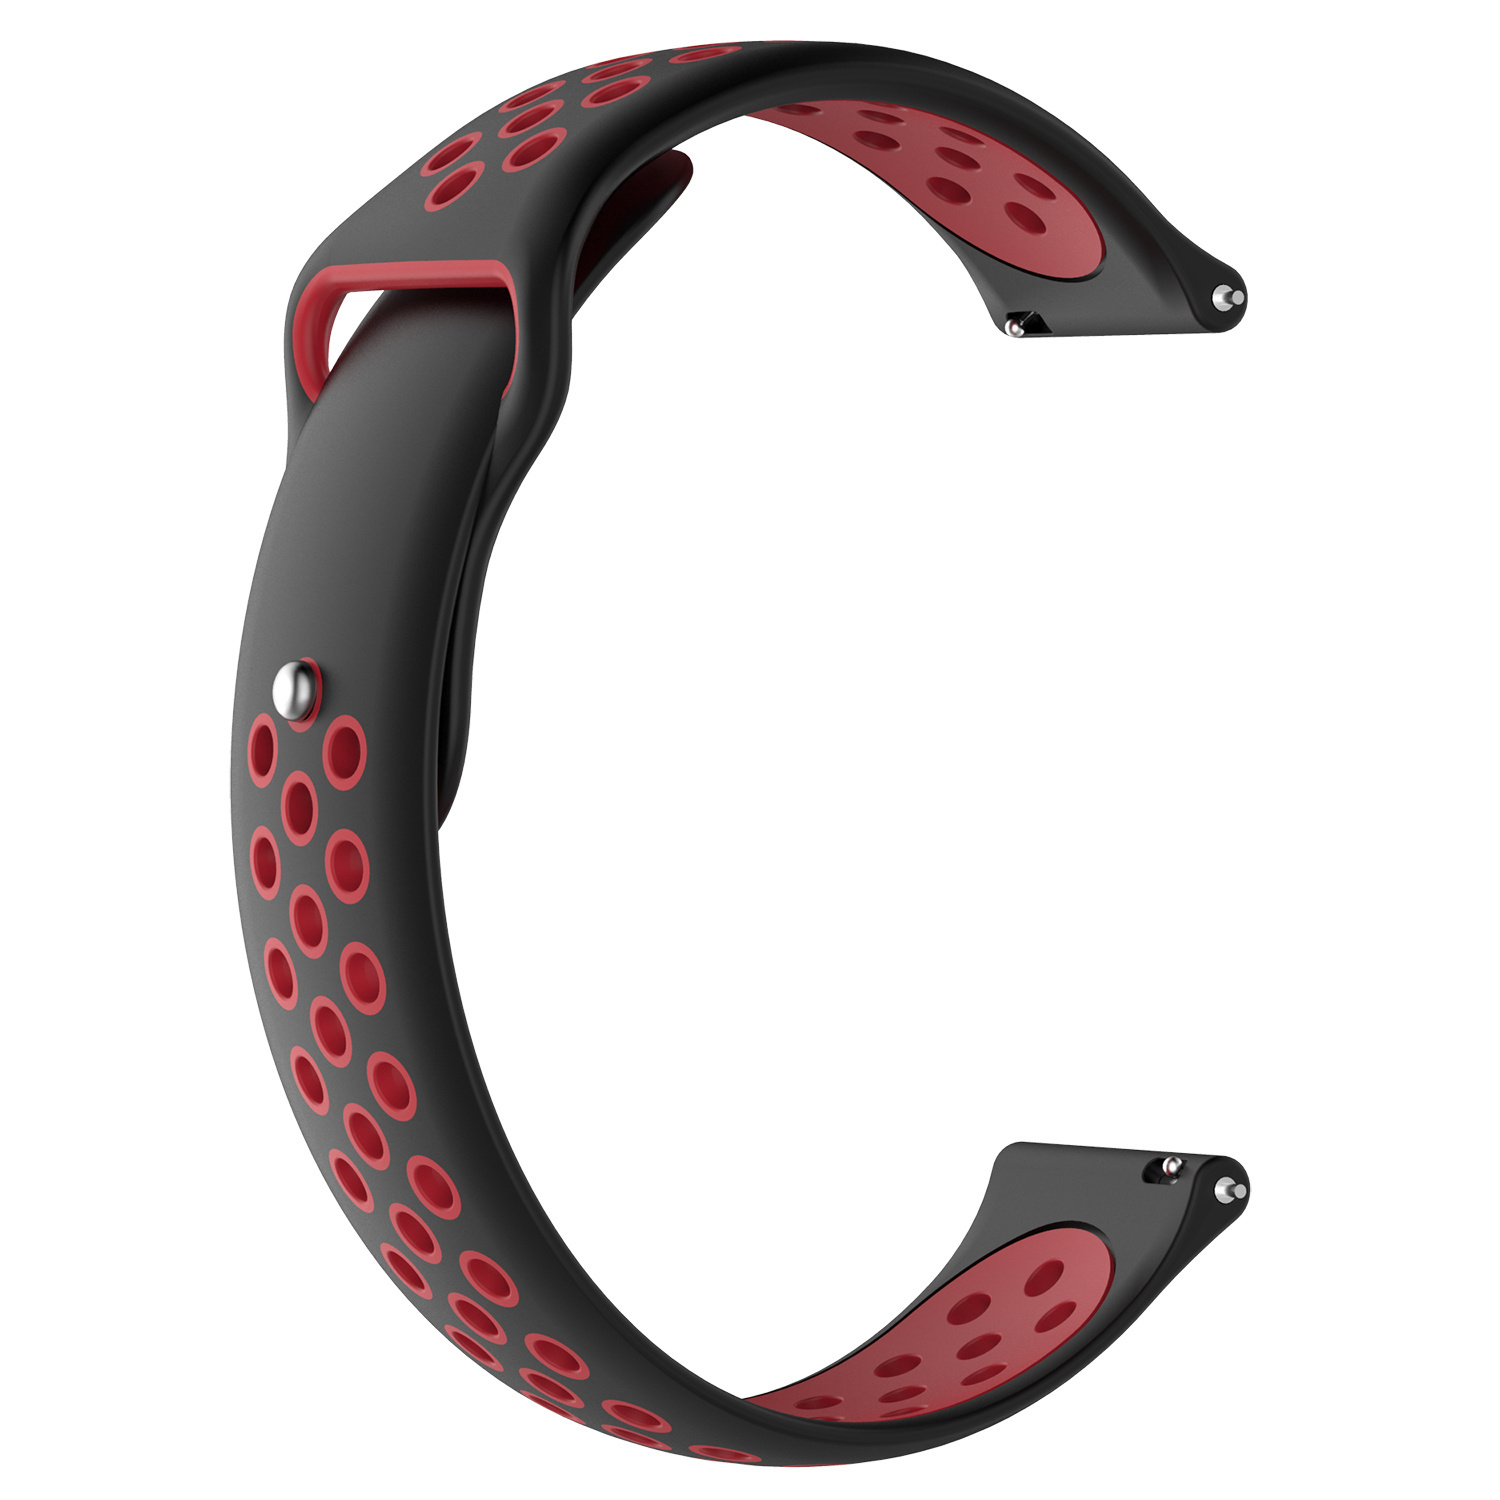 Correa deportiva doble para el Huawei Watch GT - negro rojo